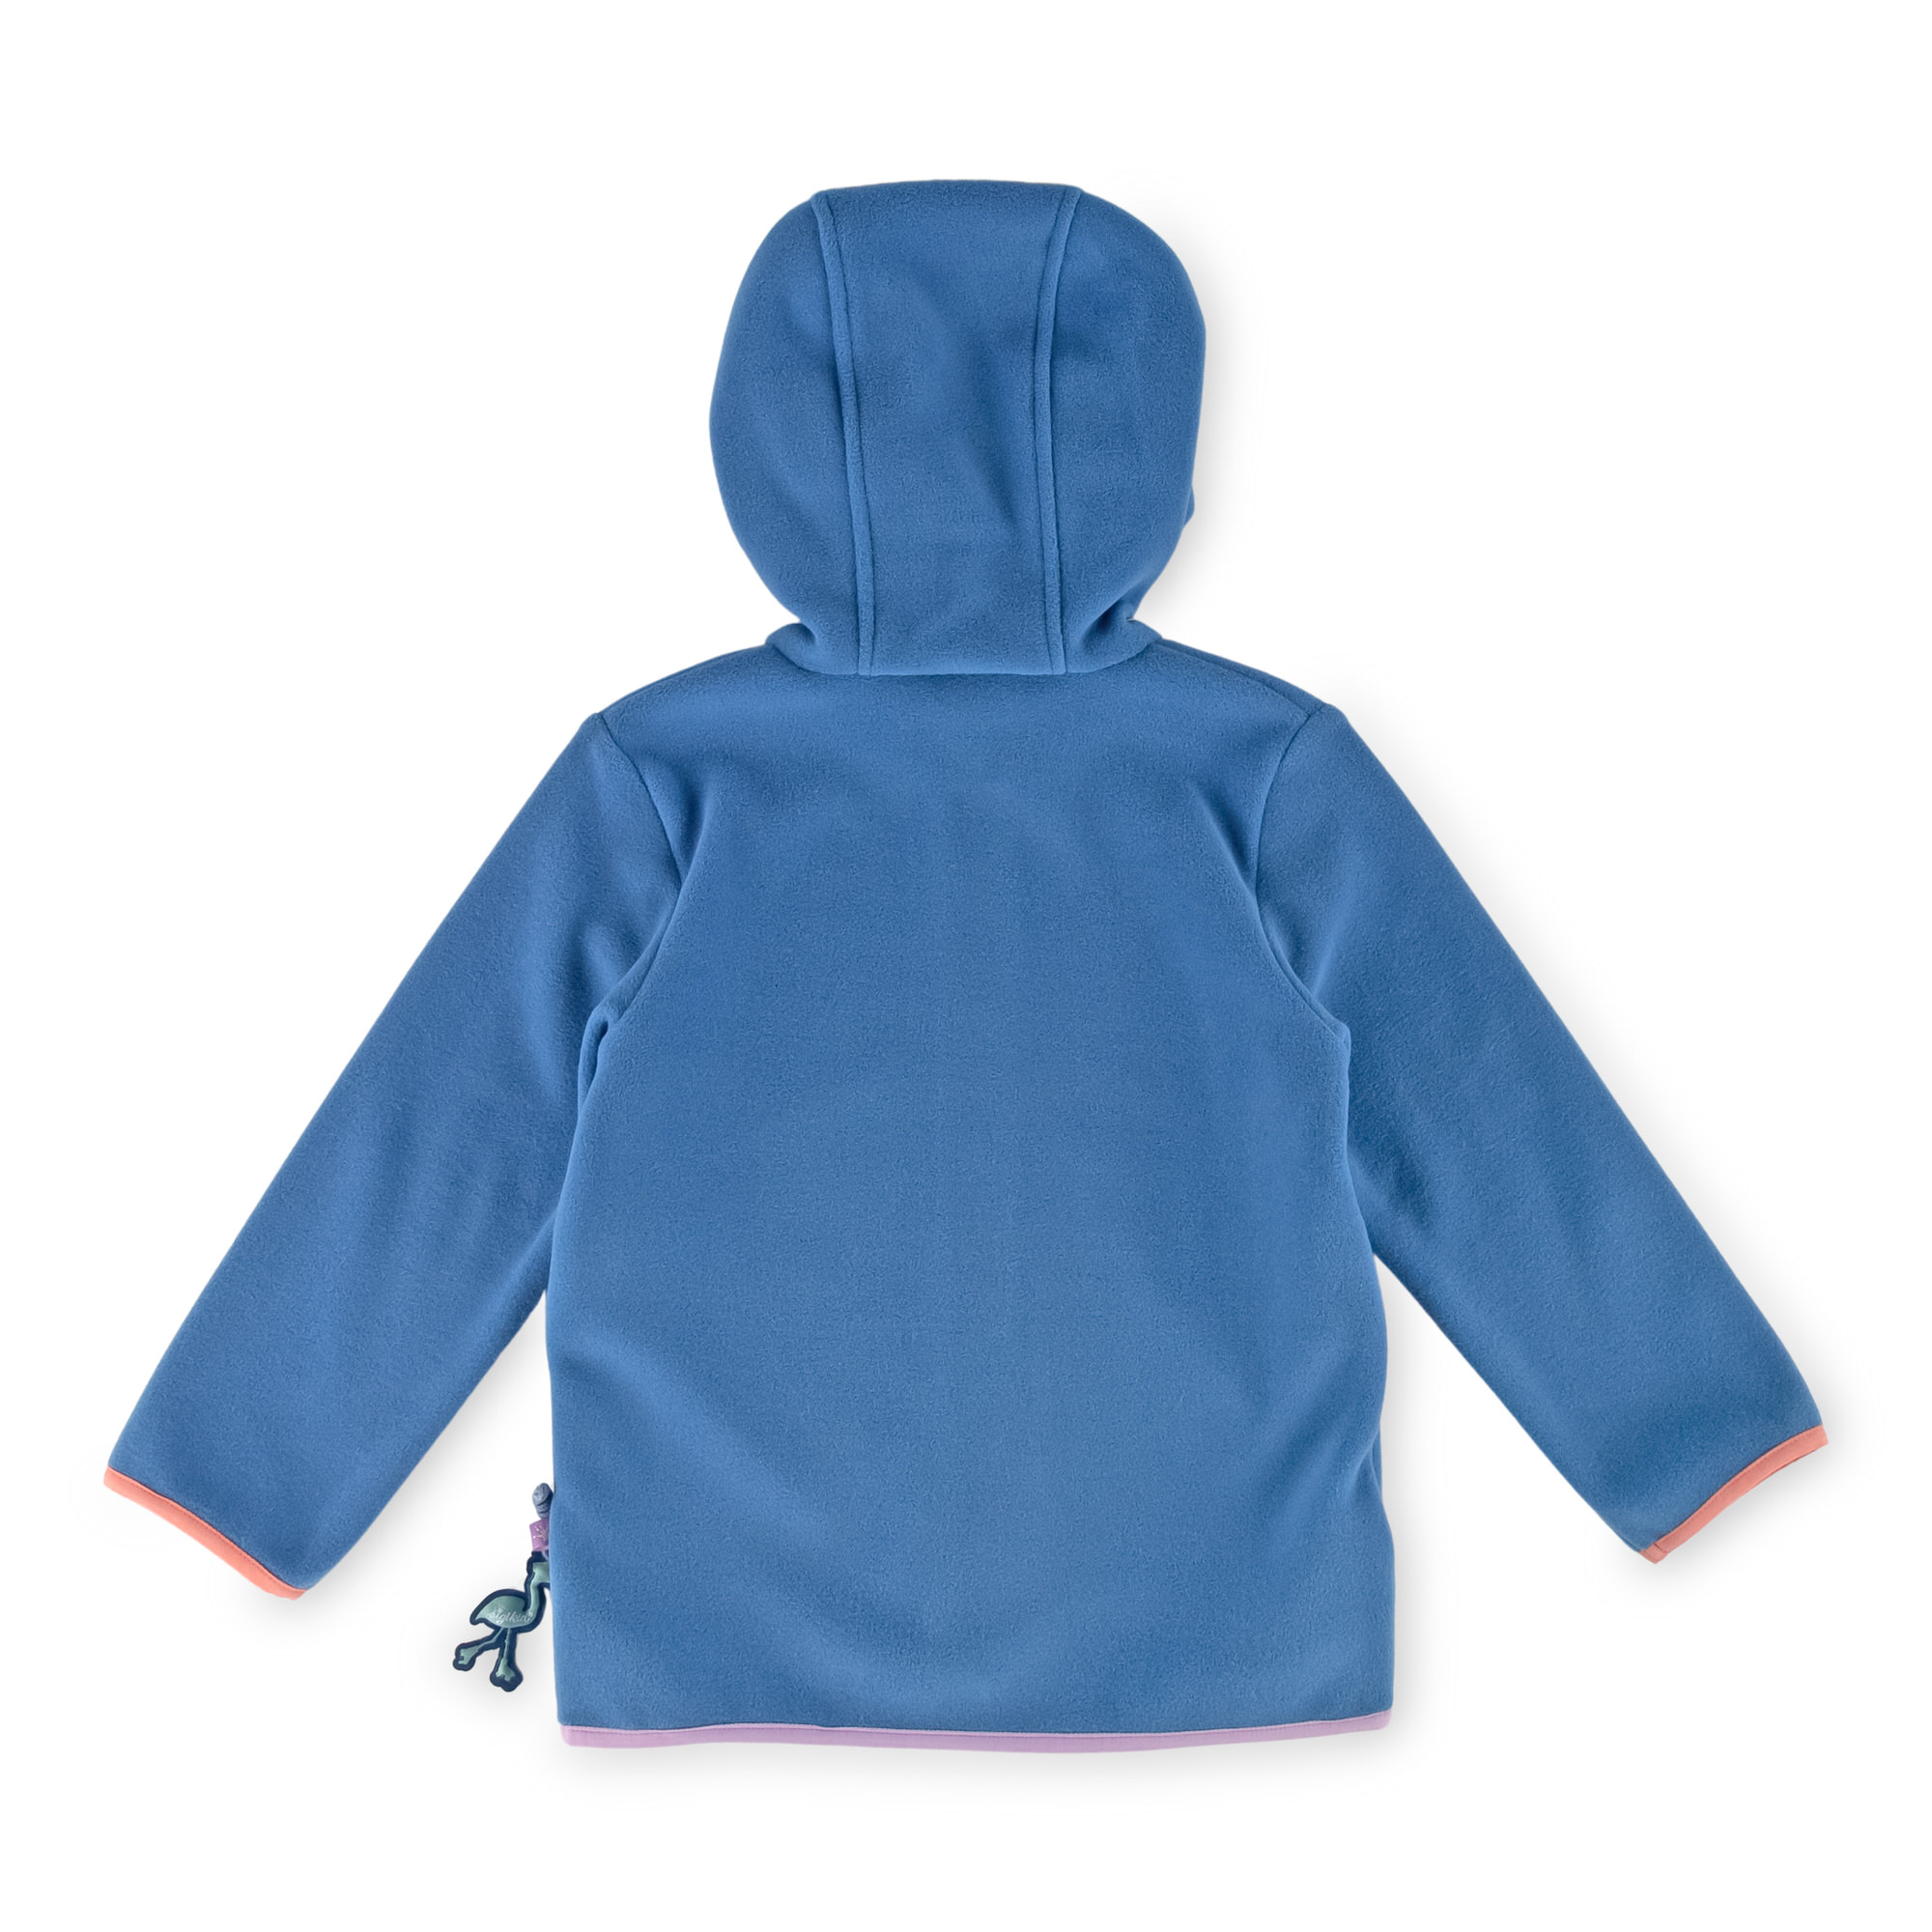 Girls' hooded fleece jacket flamingo, azure blue